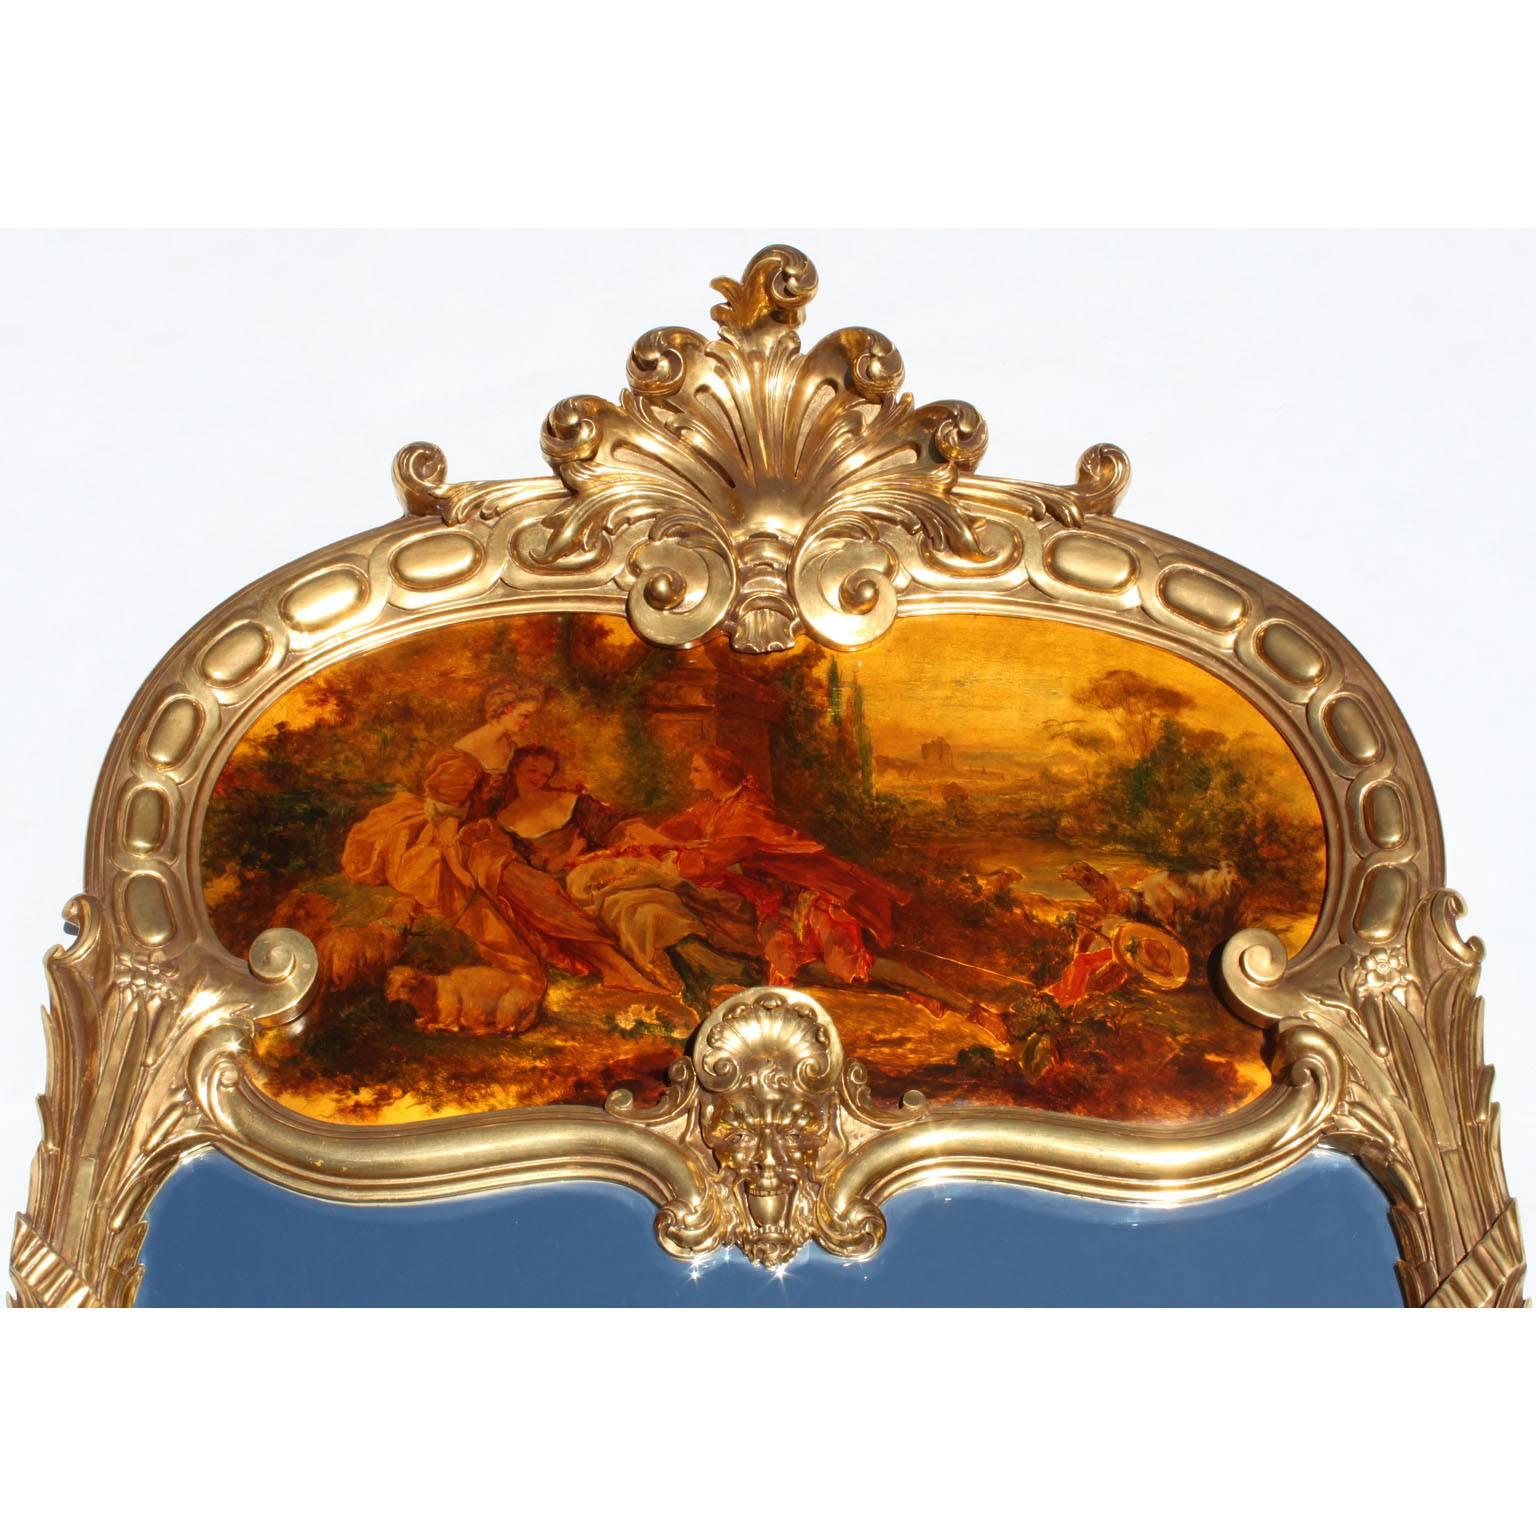 Ein feiner französischer Spiegel im Stil Louis XV des 19. und 20. Jahrhunderts aus vergoldetem Holz mit geschnitzten Figuren. Der längliche Rahmen ist mit einer geschnitzten Blumenmuschel über einer allegorischen Maske eines Satyrs gekrönt und zeigt